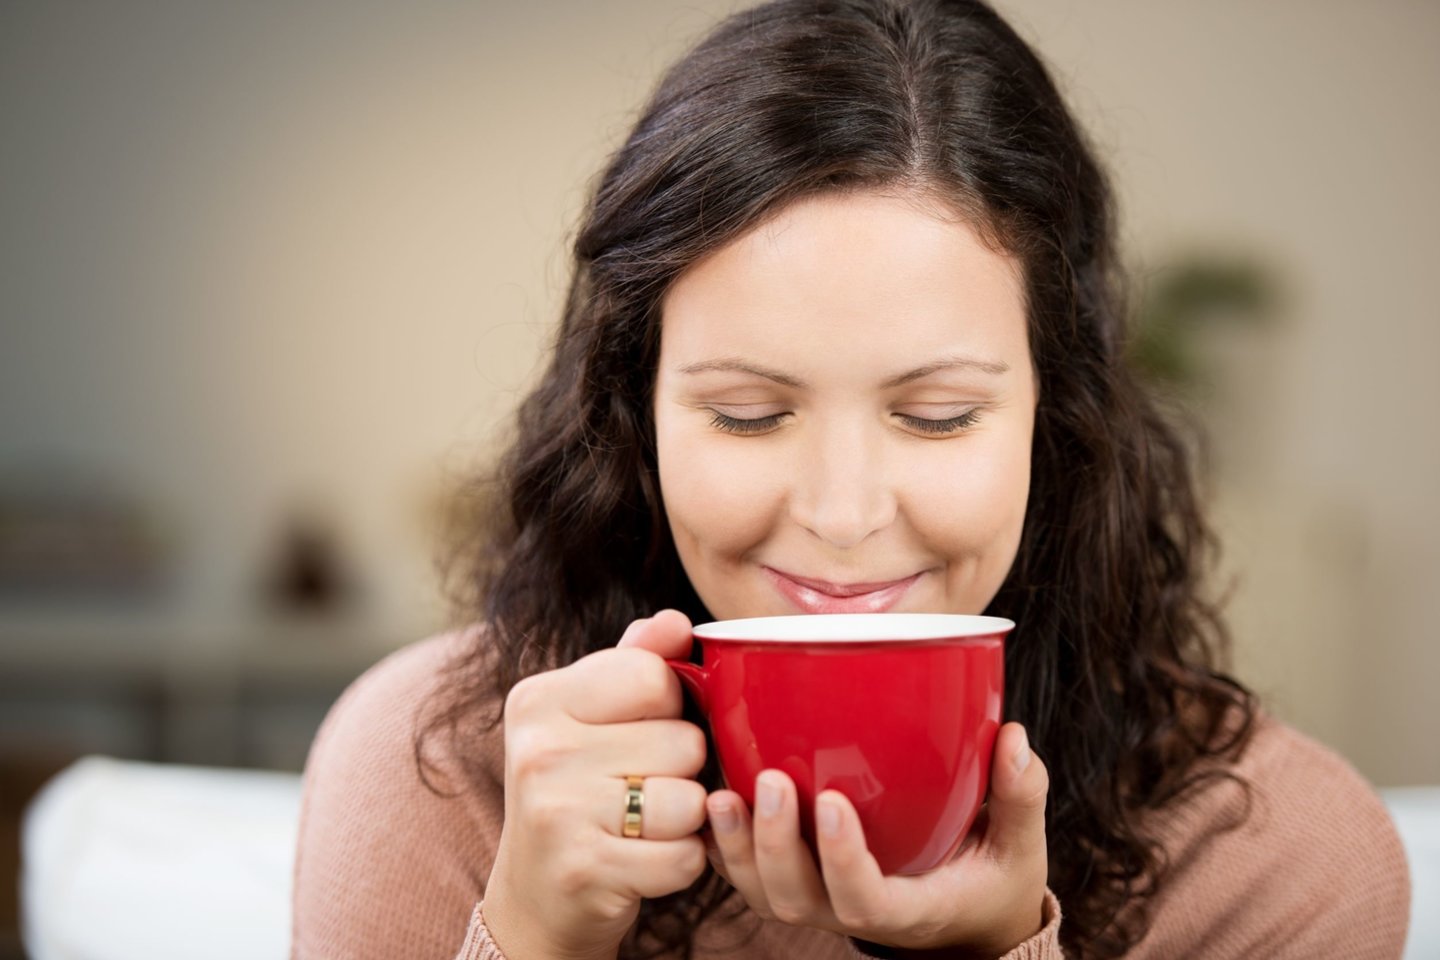 Mokslas neseniai nustatė tikslų puodelių skaičių per dieną, kuris žymi ribą, kada kava yra naudinga, o kada – kenksminga.<br>123rf nuotr.